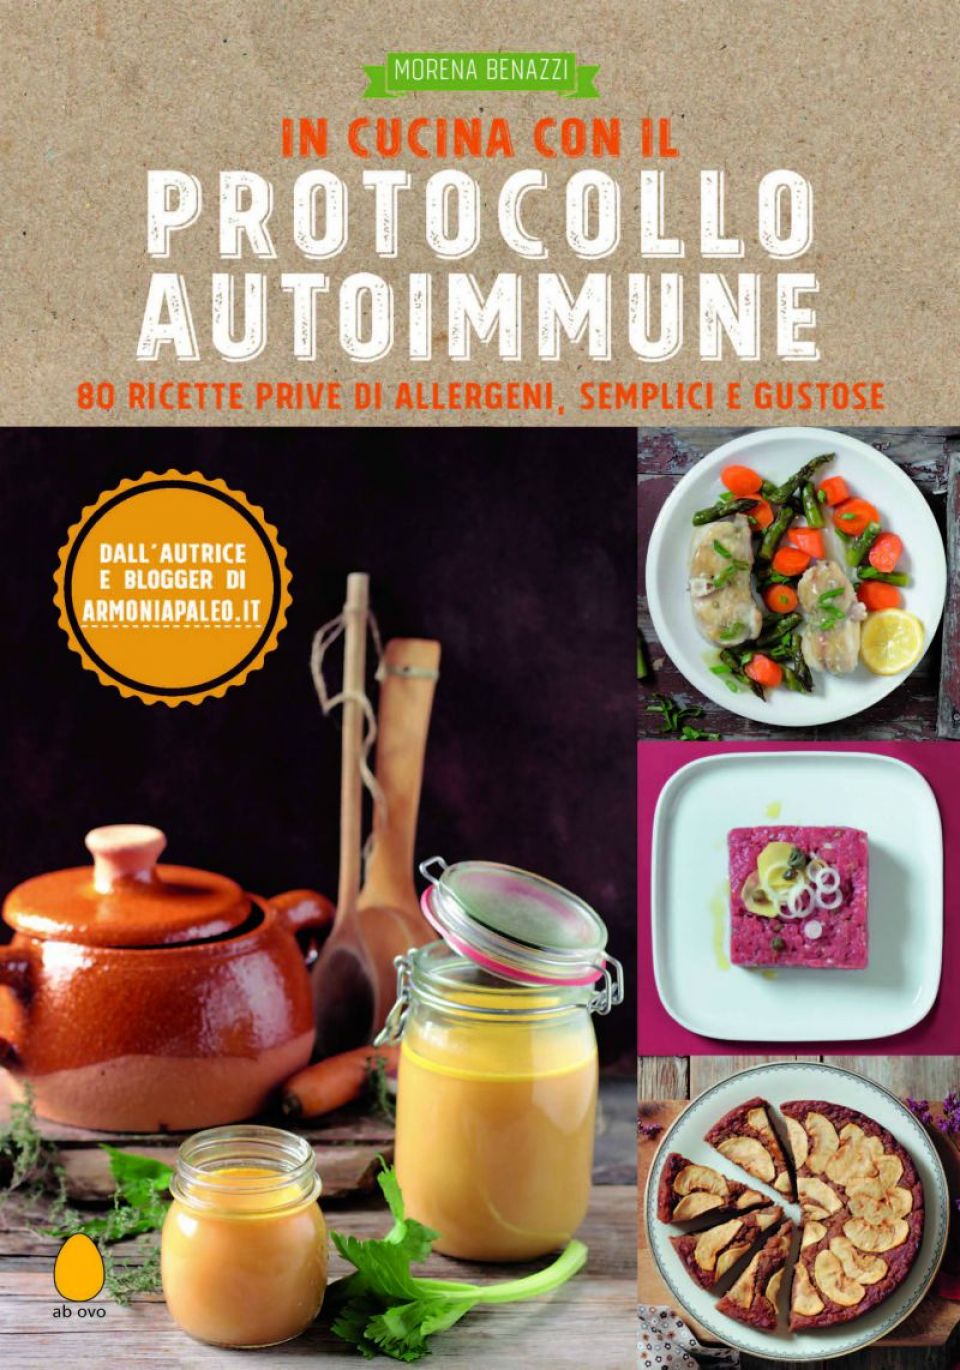 In Cucina con il Protocollo Autoimmune